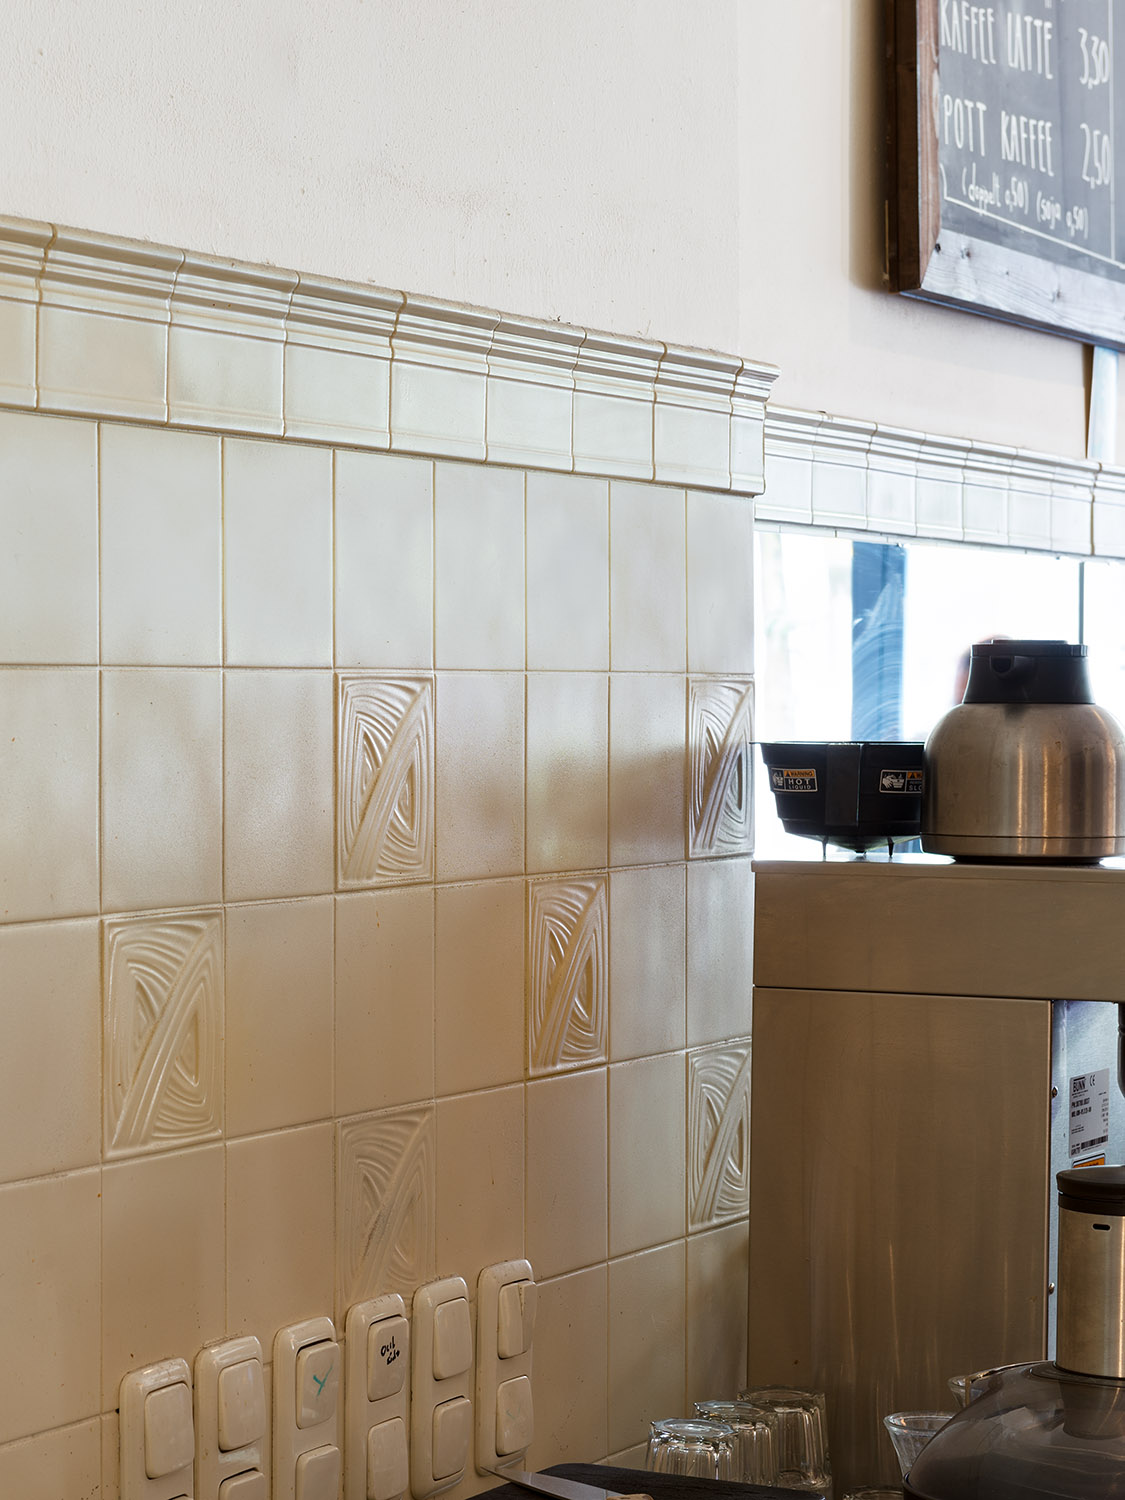 Cafebar mit altweißen Wandfliesen